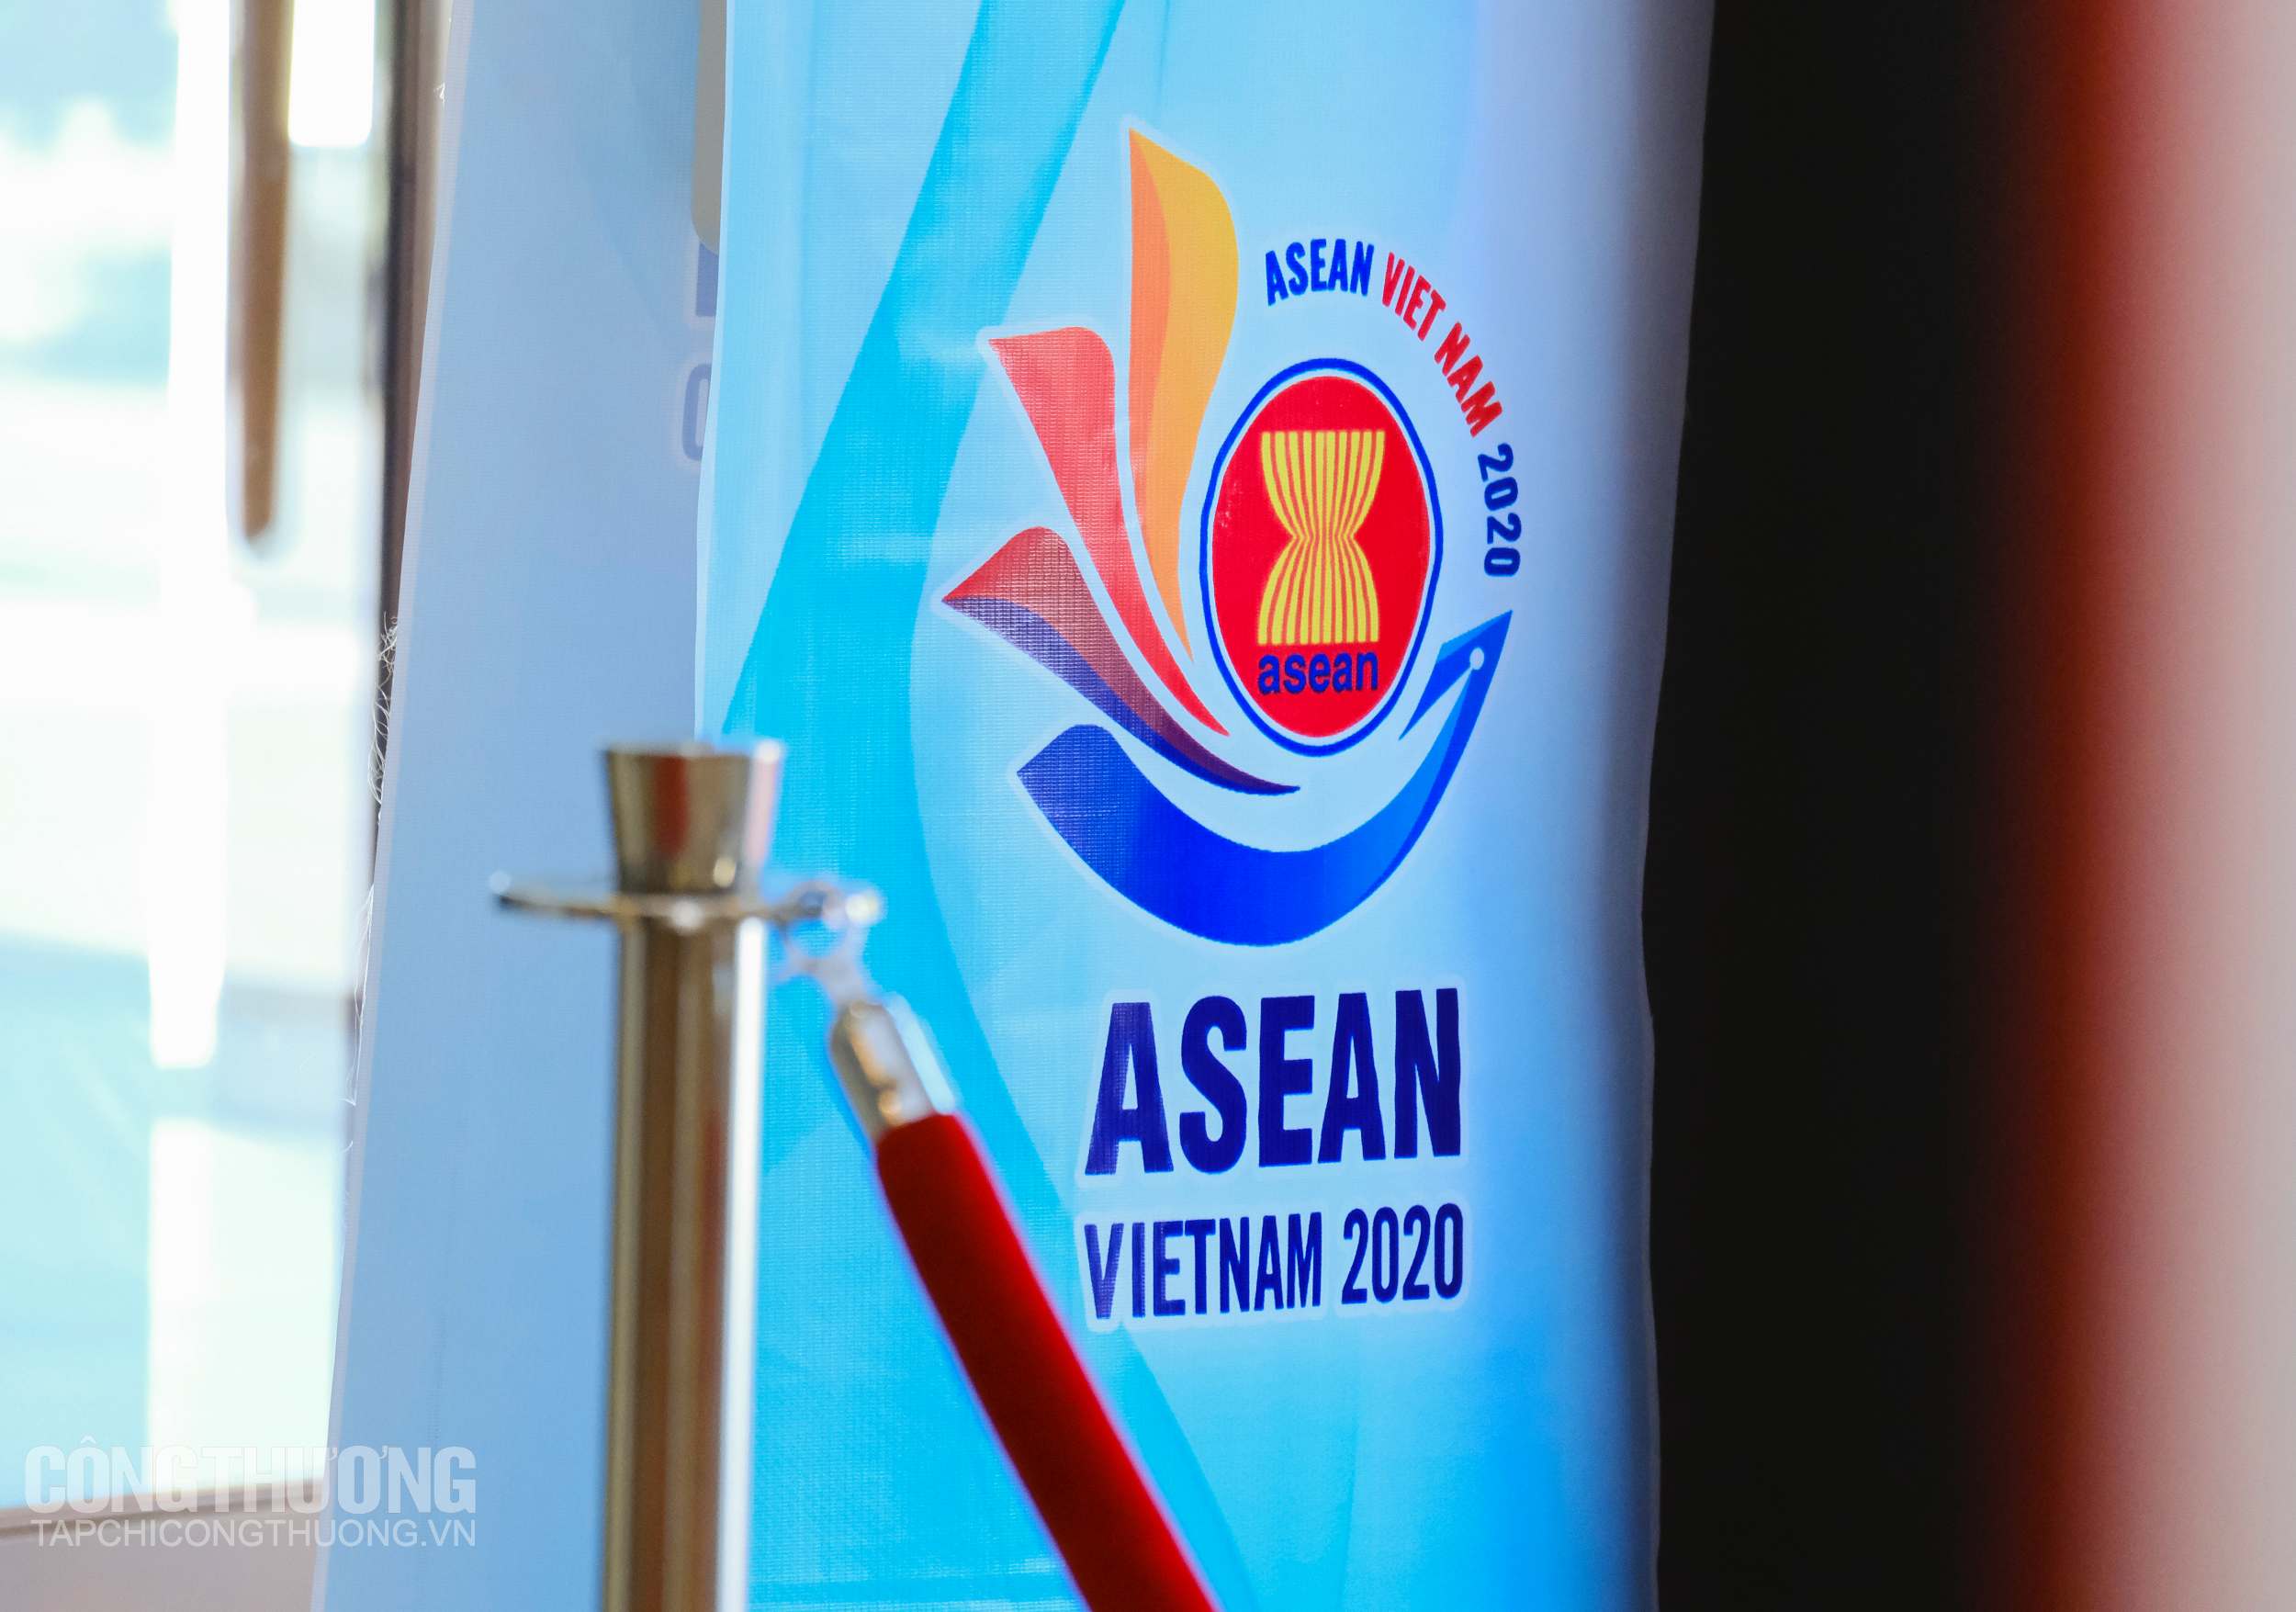 Hội nghị Bộ trưởng Kinh tế ASEAN hẹp lần thứ 26 diễn ra từ 8-11/2/2020 với nhiều nội dung quan trọng, dự kiến sẽ được rà soát, thông qua và tiếp tục triển khai trong Năm ASEAN 2020, do Việt Nam làm chủ nhà, trong đó bao gồm các ưu tiên của Việt Nam về nội dung kinh tế trong hợp tác ASEAN để báo cáo lên Hội nghị Cấp cao ASEAN lần thứ 36 (dự kiến được tổ chức tại Đà Nẵng vào tháng 4/2020)